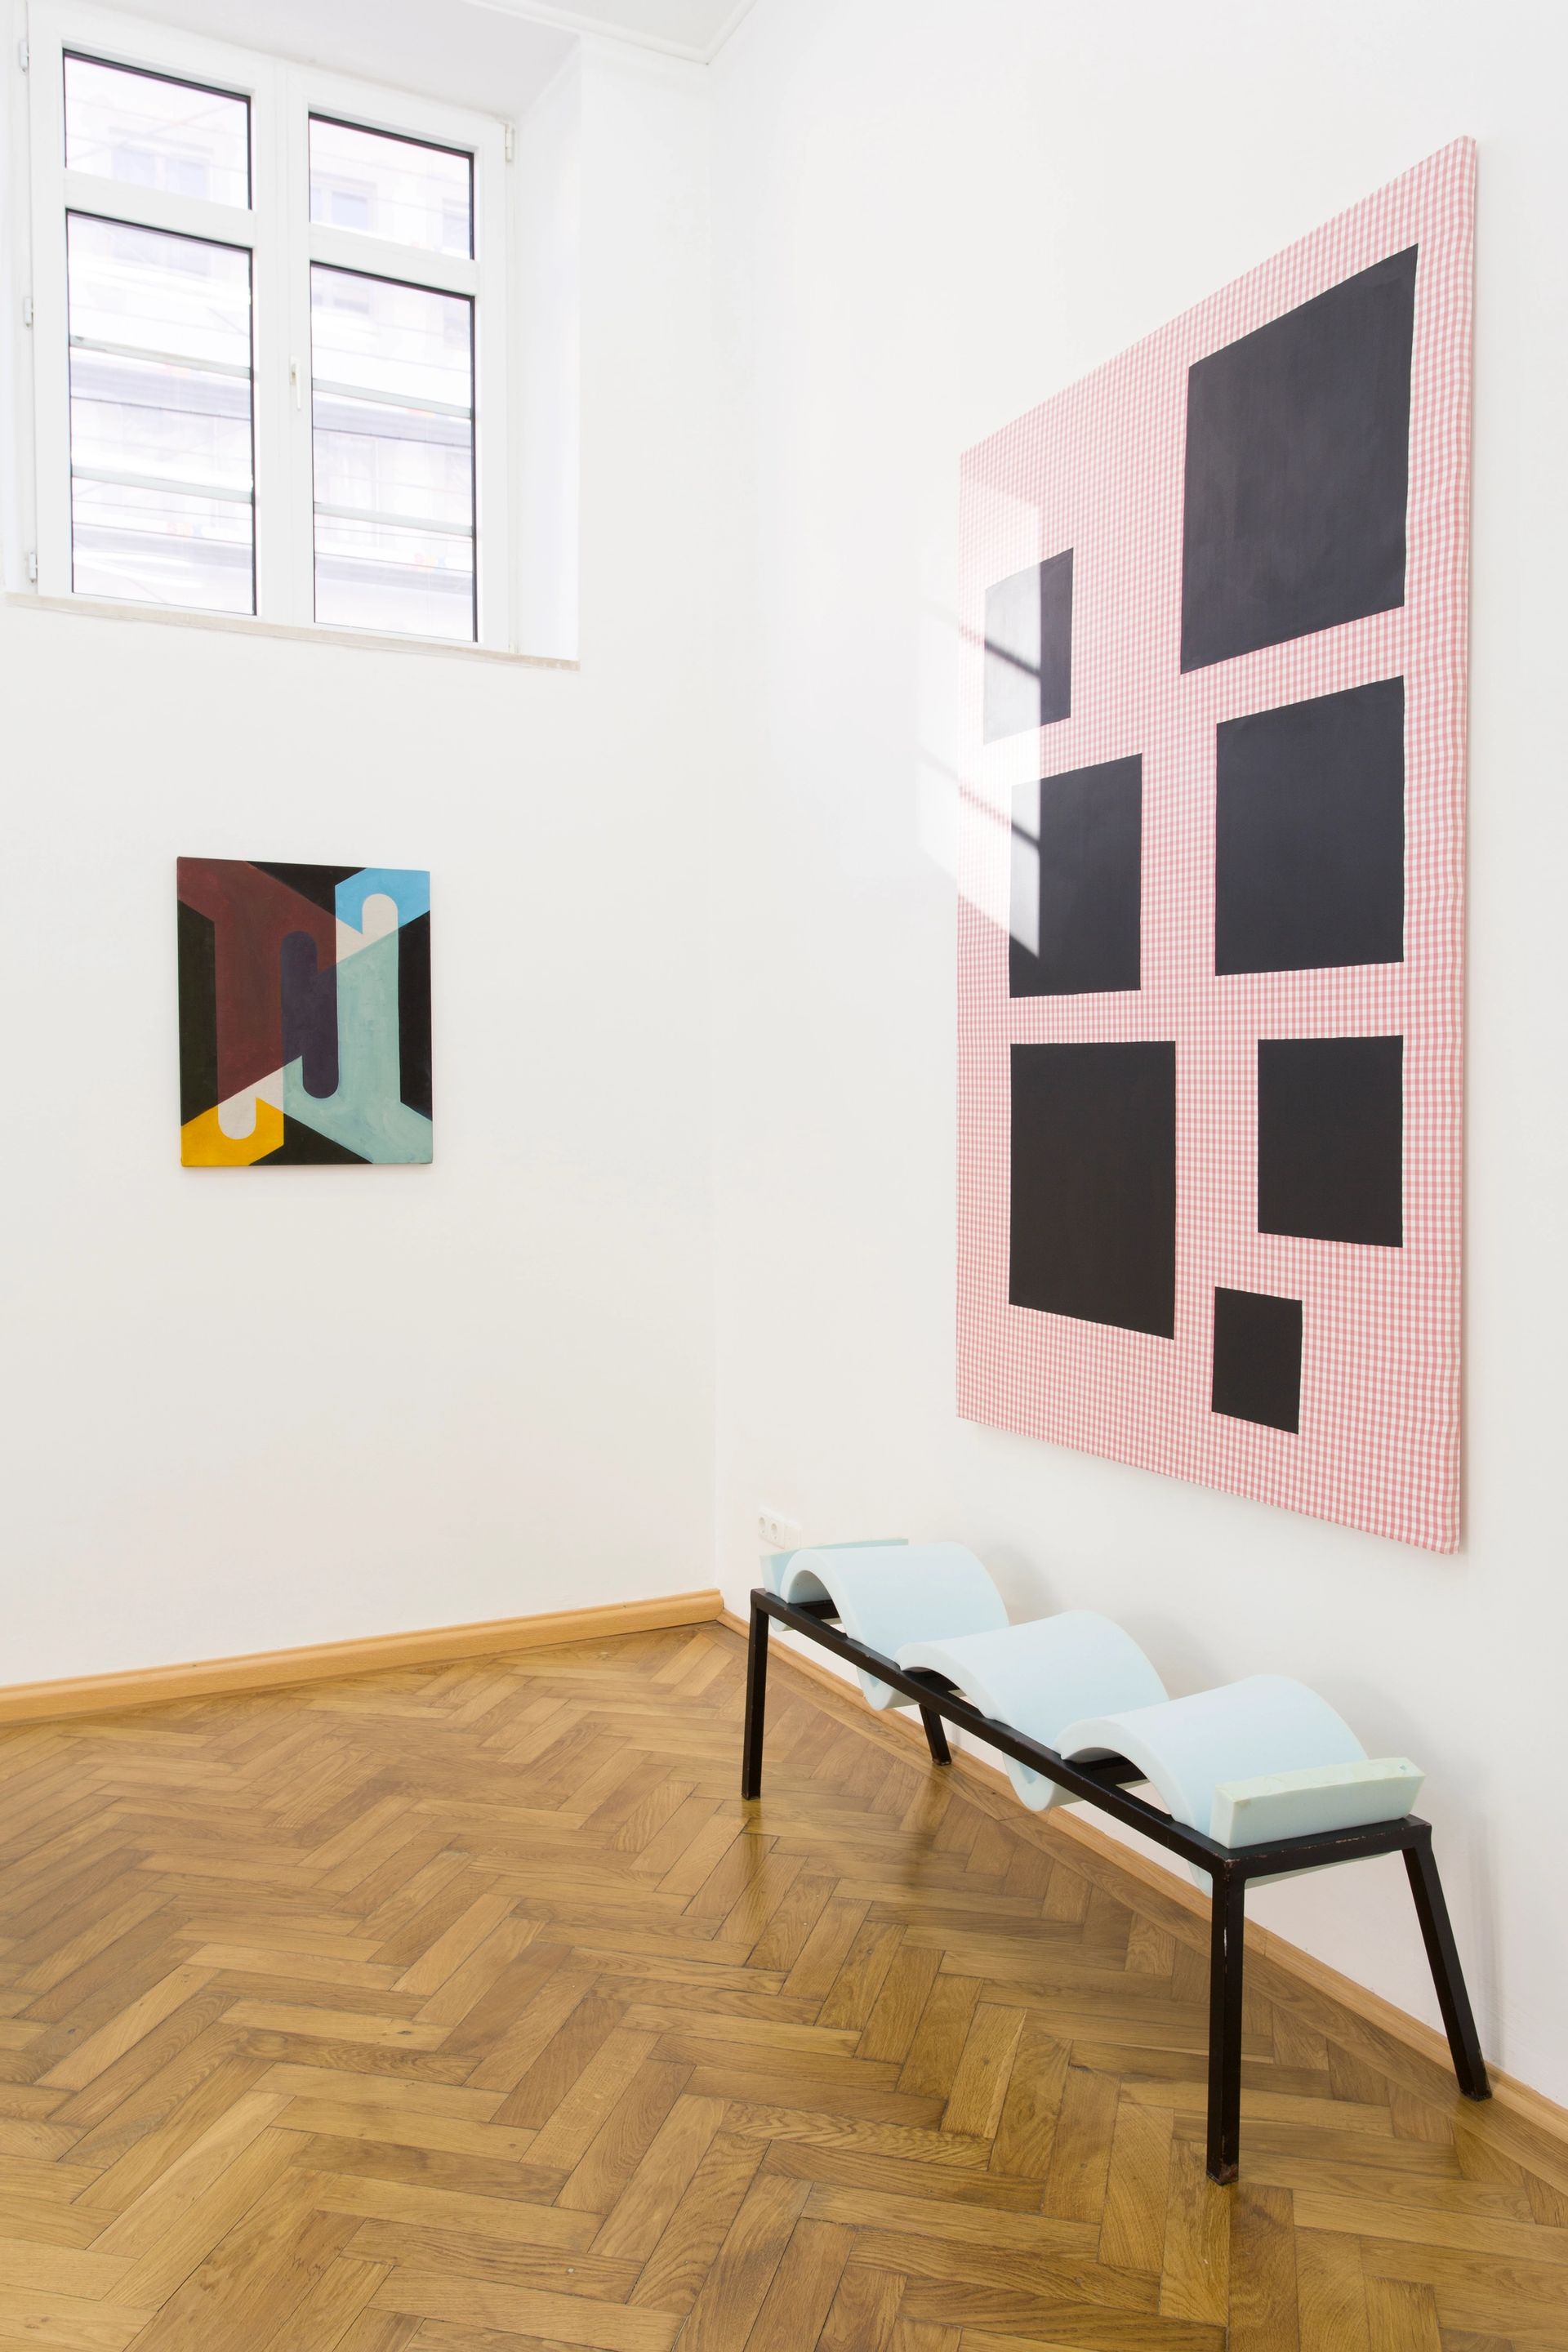 Installation view: Elvire Bonduelle, “waiting room #4”, 2015 (Émile Vappereau, Nicholas Chardon, Elvire Bonduelle)